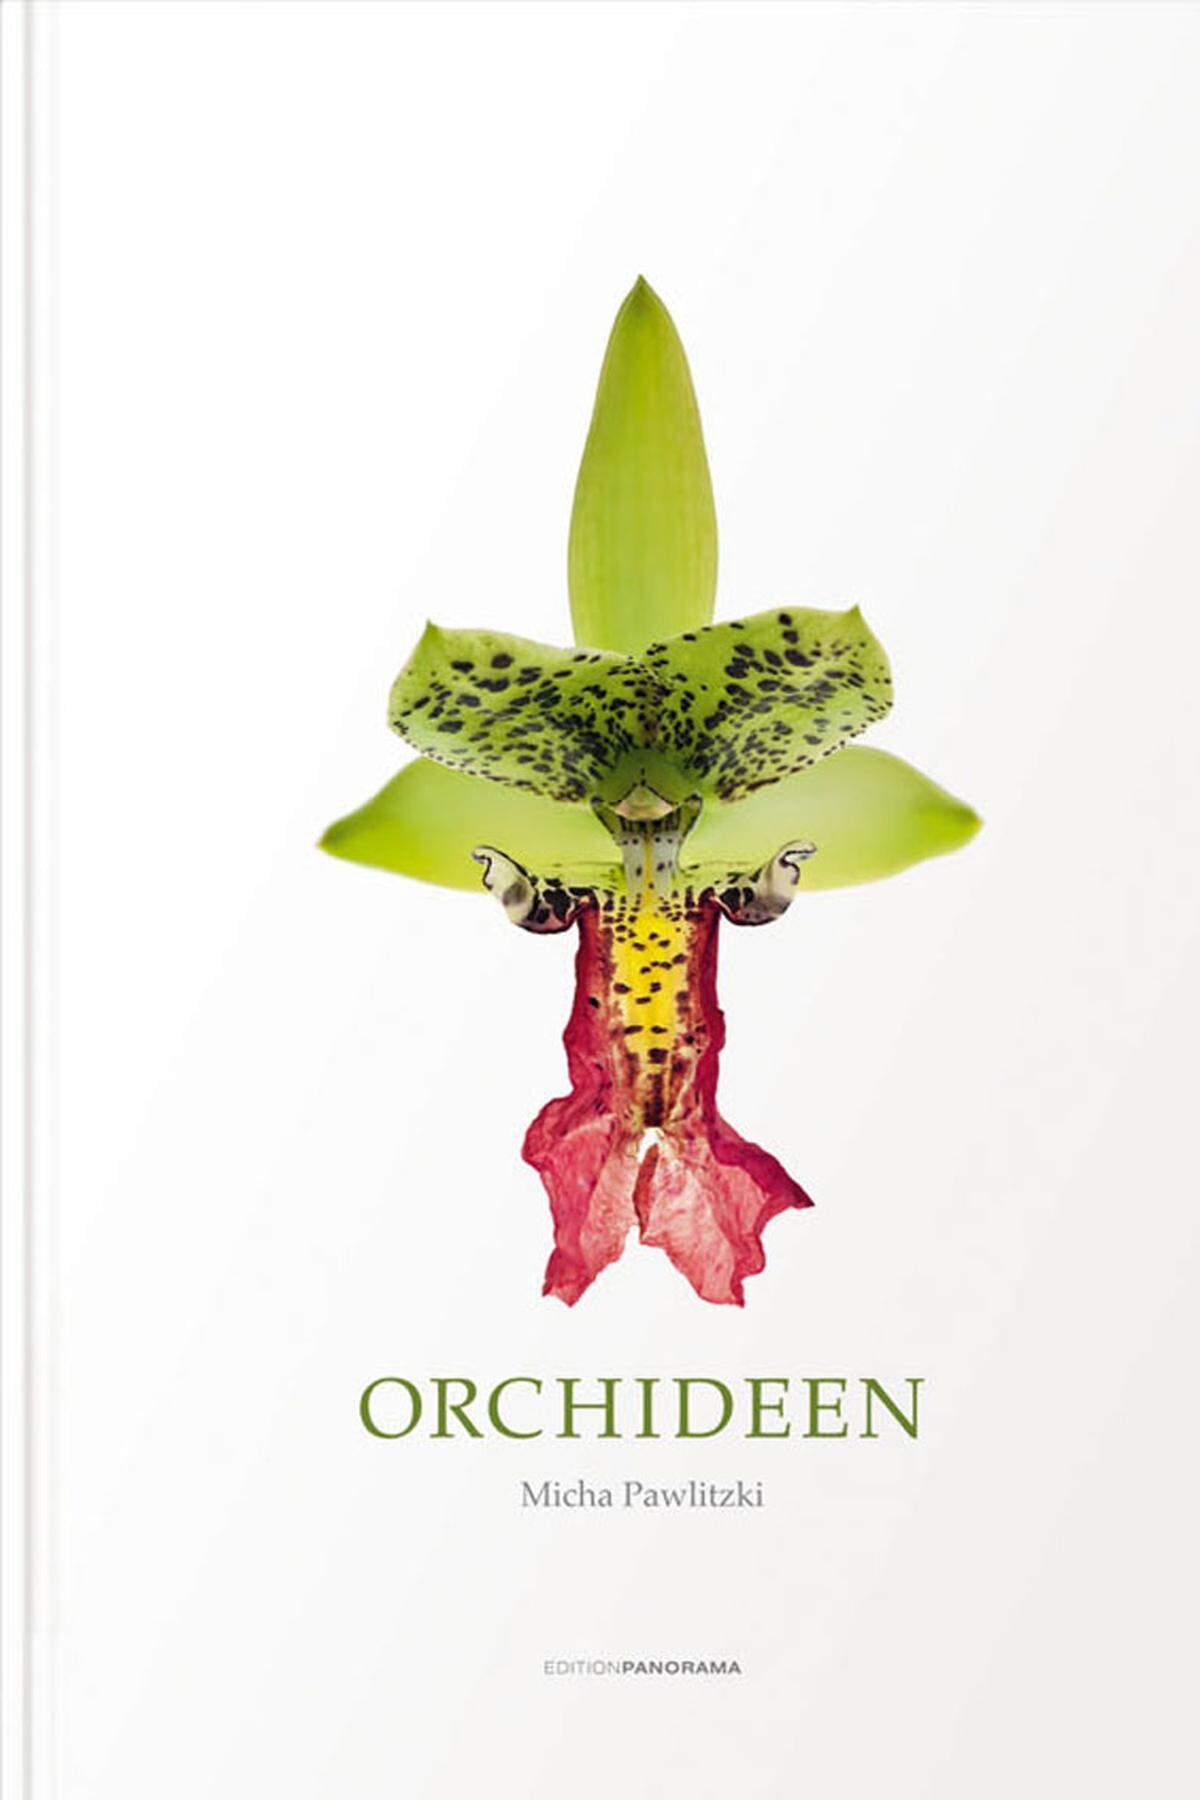 Wahre Kunstwerke der Natur füllen dieses kiloschwere Buch von Micha Pawlitzki: Unzählige Orchideen hat der Fotograf groß und eindrucksvoll ins Bild beziehungsweise in den Weißraum gesetzt. Pawlitzki ist auch sehr weit in der Weltgeschichte herumgefahren, um die seltensten Exemplare aufzutreiben. Als Reiseführer eignet sich der prächtige Band für Orchideen-Fans insofern, als er die Pflanzen kontinenteweit clustert und so auf die Idee bringt, sich auf deren Spur zu machen. Das Buch wurde mit dem Deutschen Fotobuchpreis 2015 in Silber ausgezeichnet. Zum näheren Blumenverständnis gibt es ein längeres Glossar und Essays.Micha Pawlitzki: "Orchideen", Edition Panorama, 78 Euro, www.editionpanorama.de